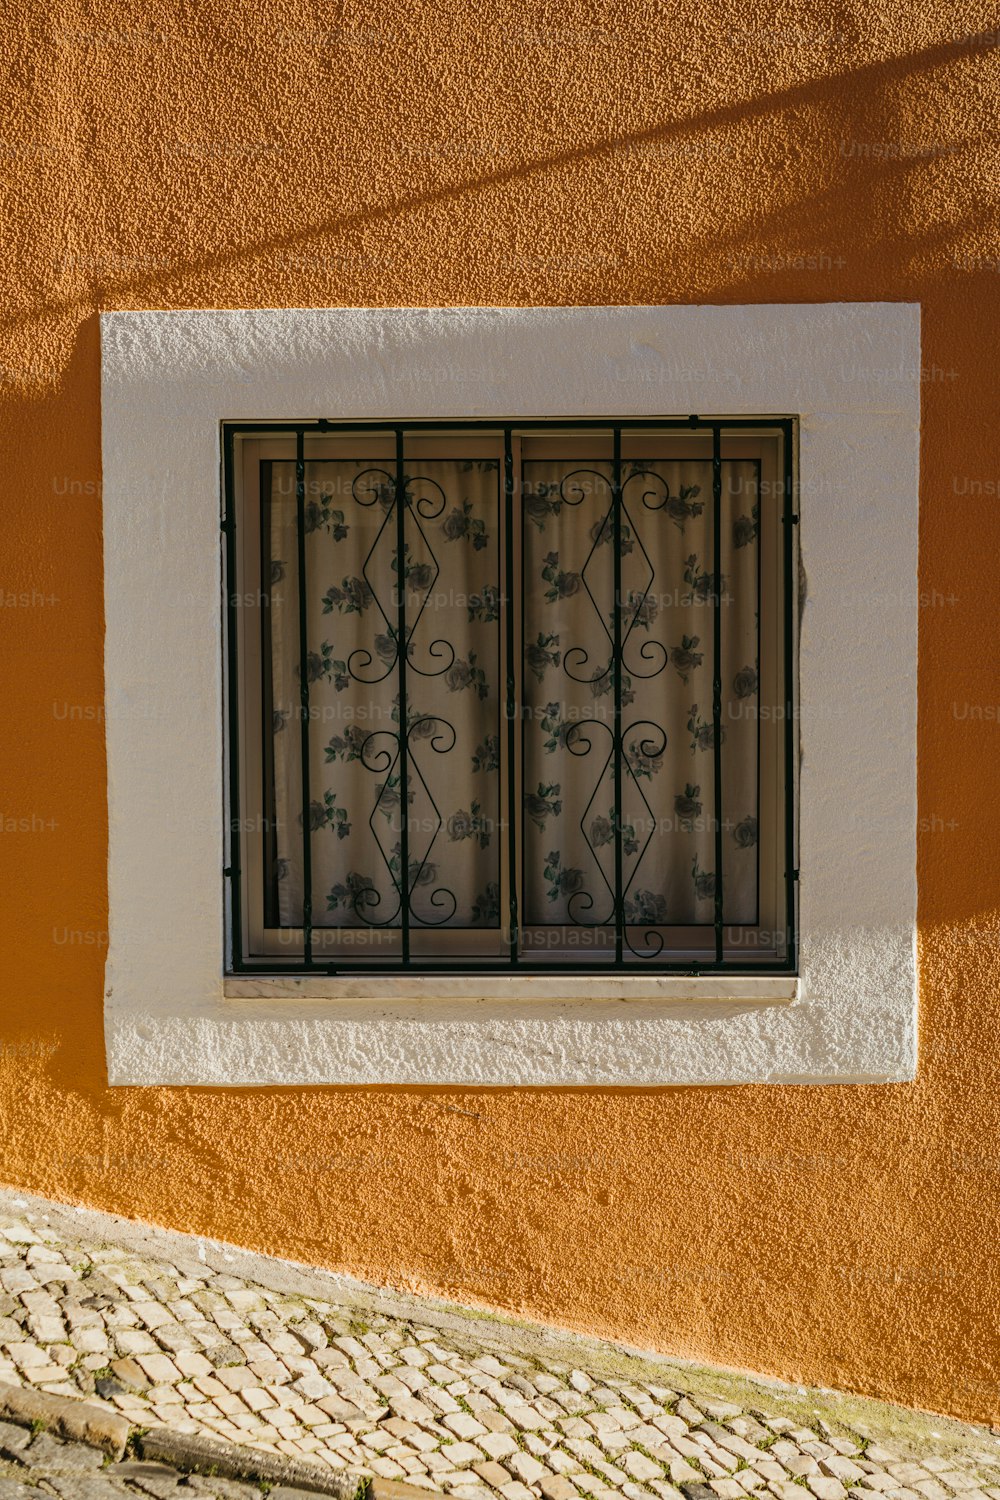 una finestra su una parete con una griglia in ferro battuto